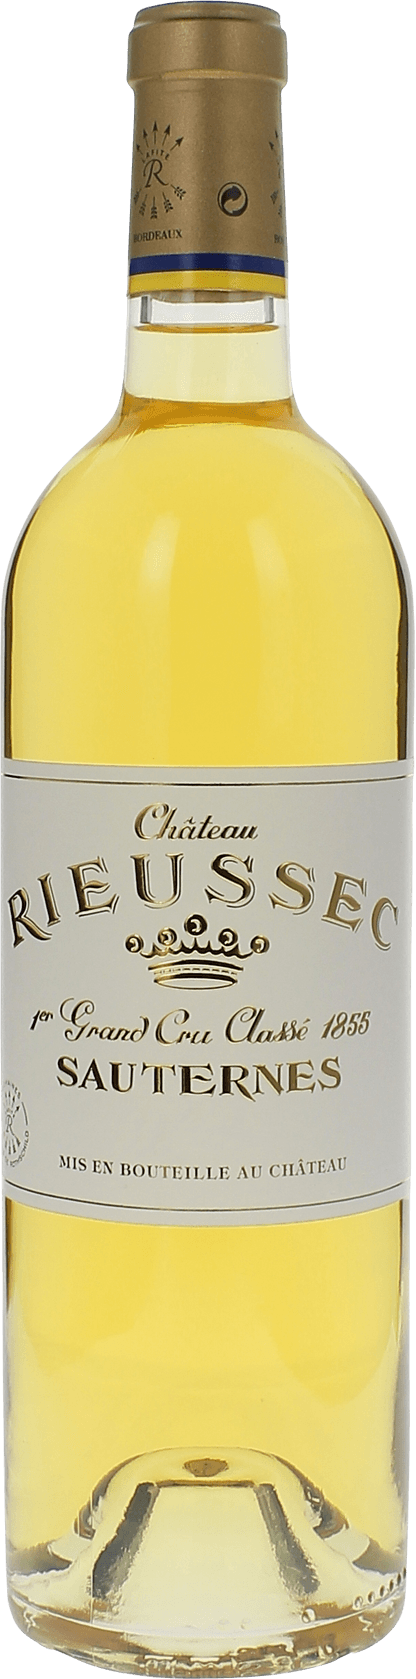 Rieussec 1982 1er cru Sauternes, Bordeaux blanc